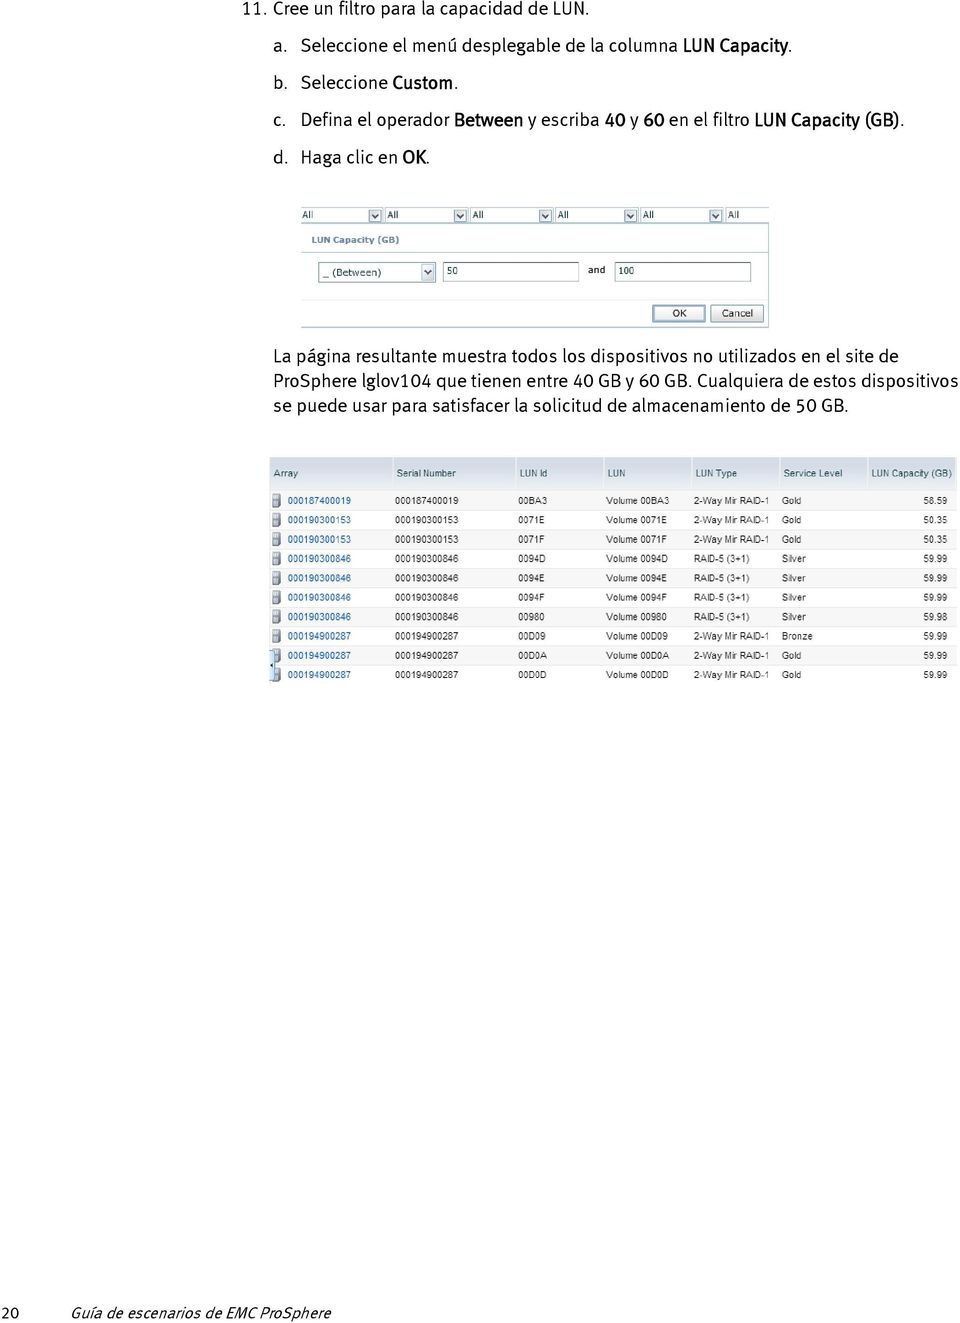 La página resultante muestra todos los dispositivos no utilizados en el site de ProSphere lglov104 que tienen entre 40 GB y